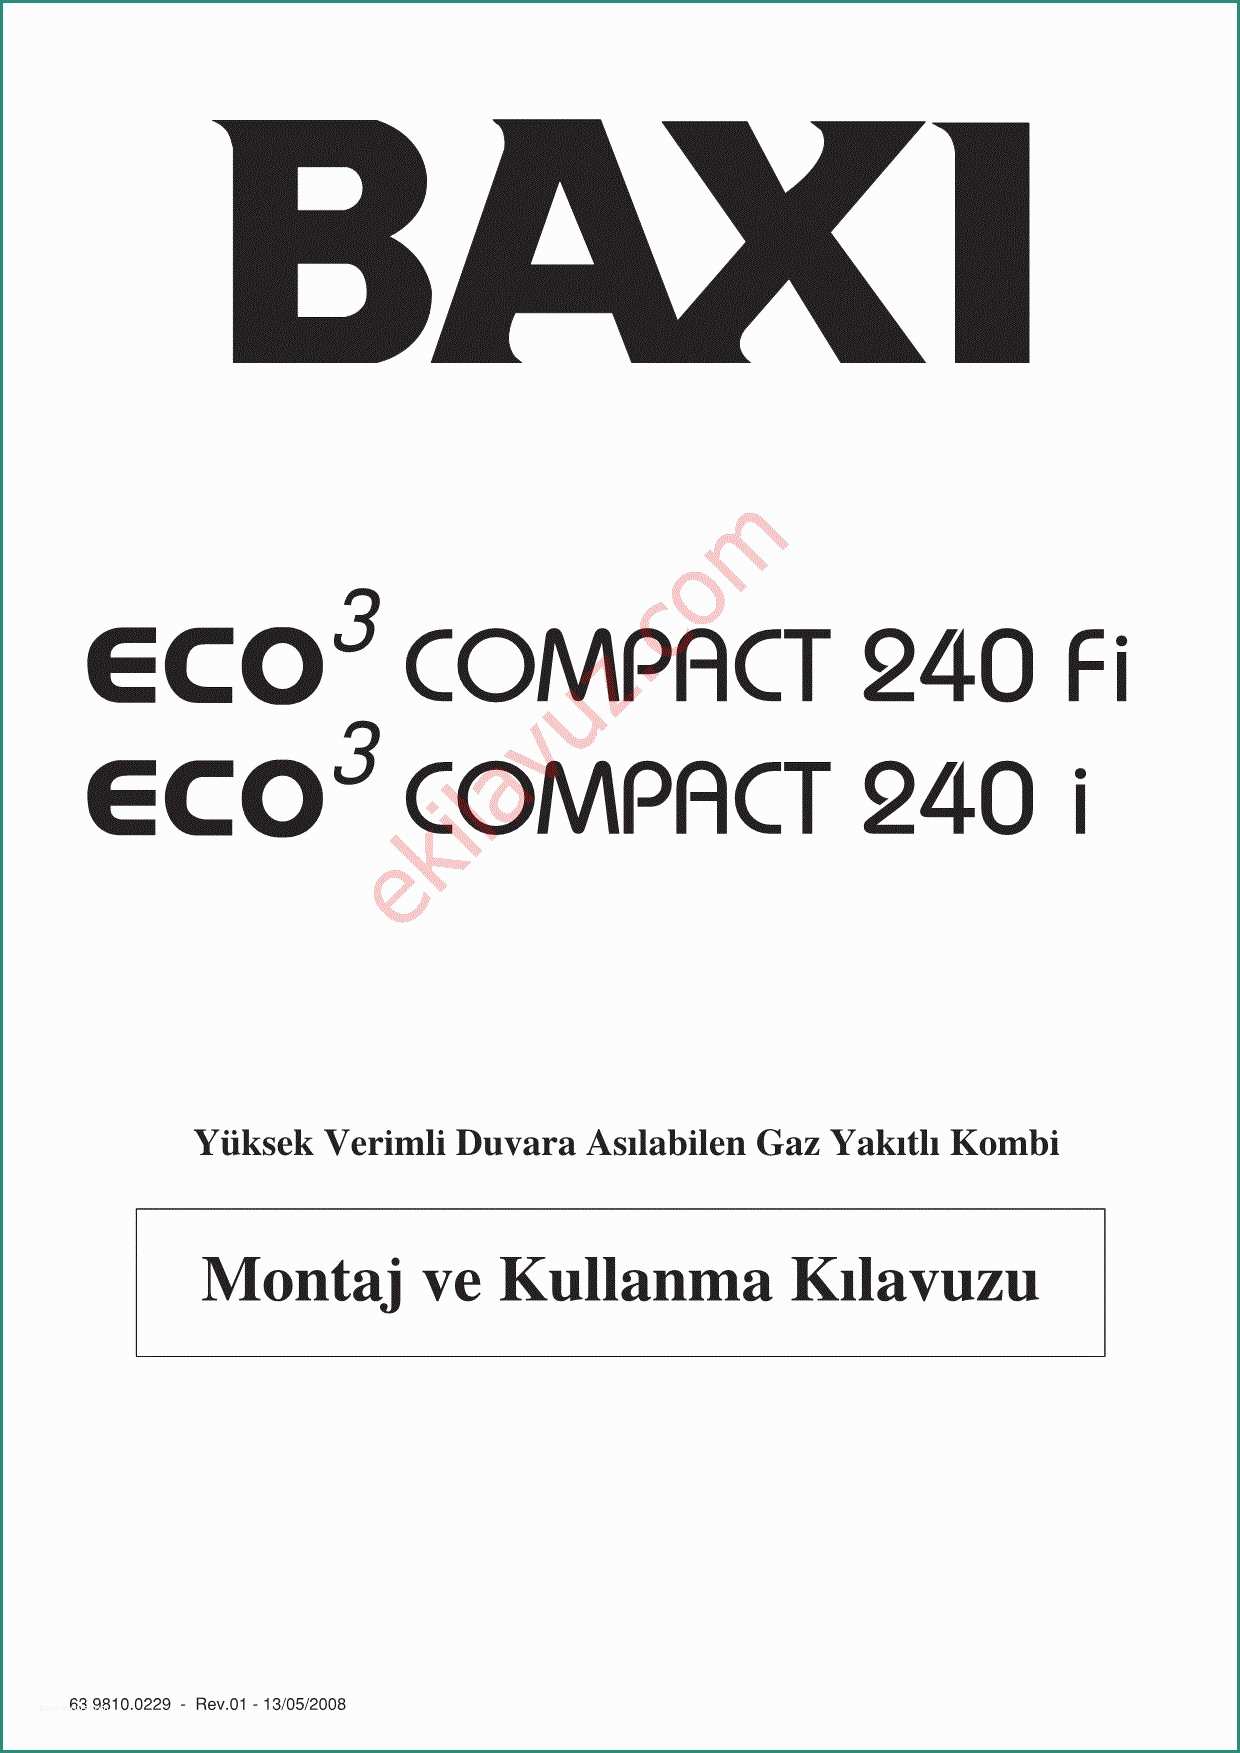 Baxi Eco Compact E Baxi Boiler Baxi Boiler System Avec Megaflo Whats Inside 3 Et Baxi